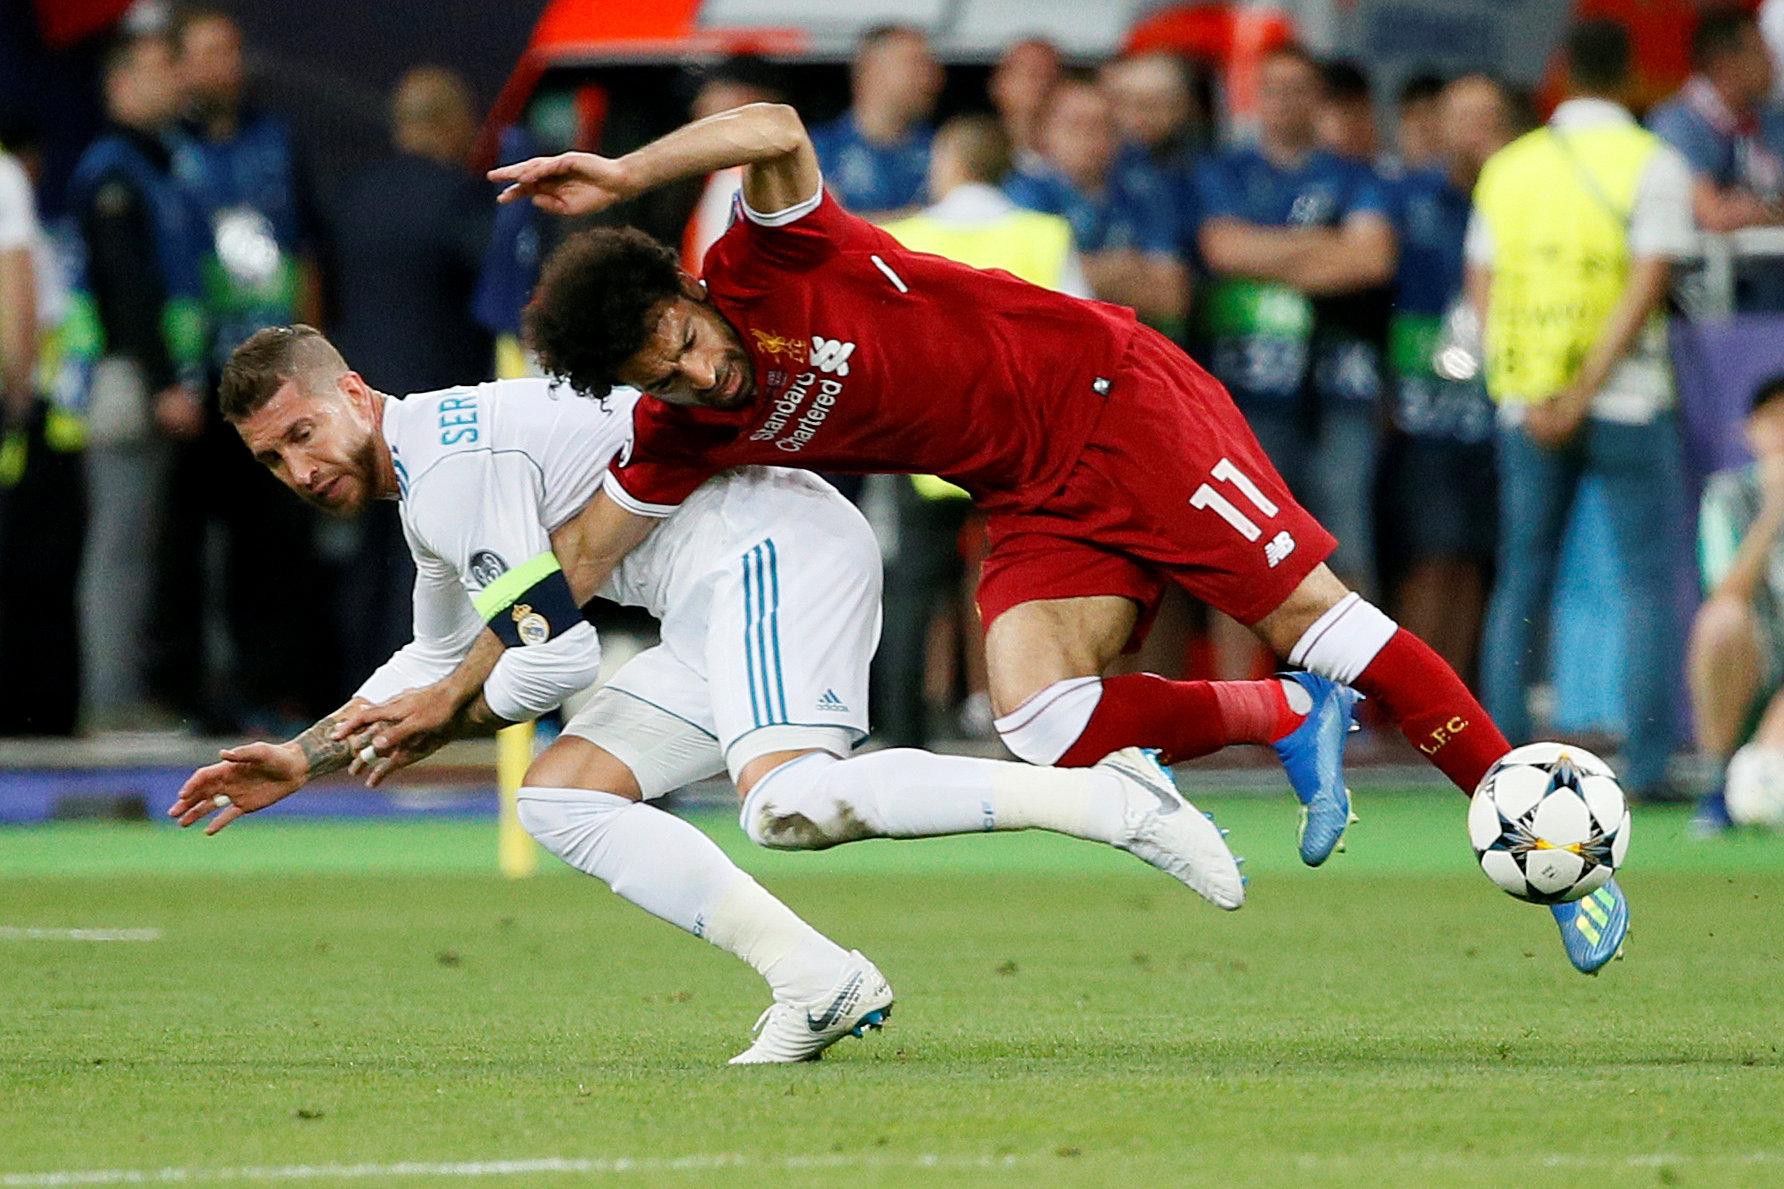 Hình ảnh Ramos cười hớn hở lúc Salah rời sân trong nước mắt gây phẫn nộ - Ảnh 1.